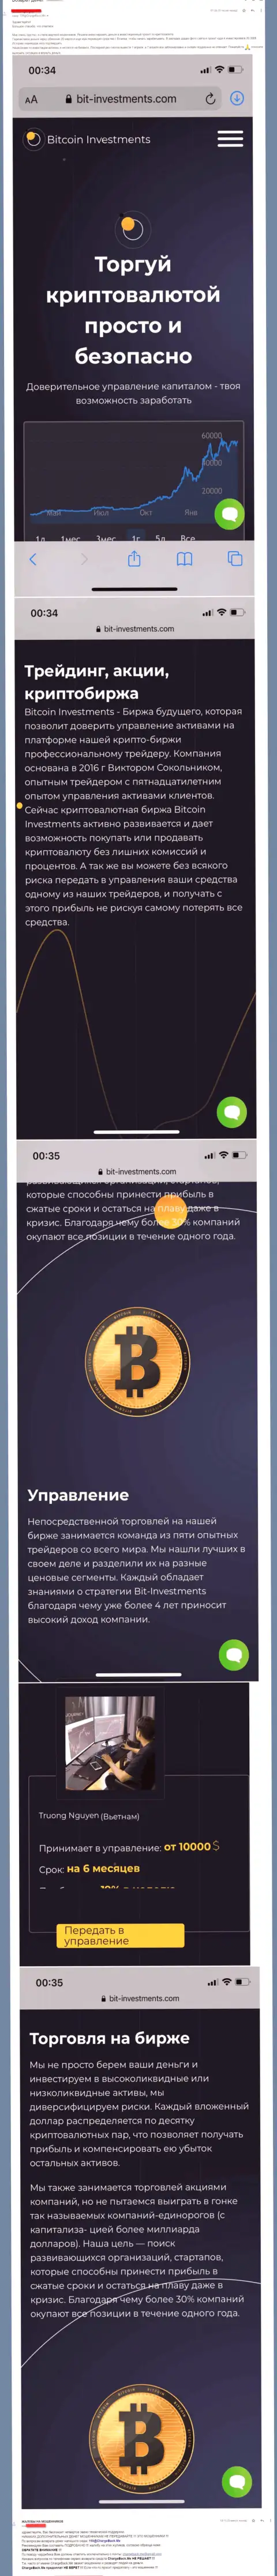 Бегите от конторы Bitcoin Limited как можно дальше, украдут денежные активы !!! (отзыв)